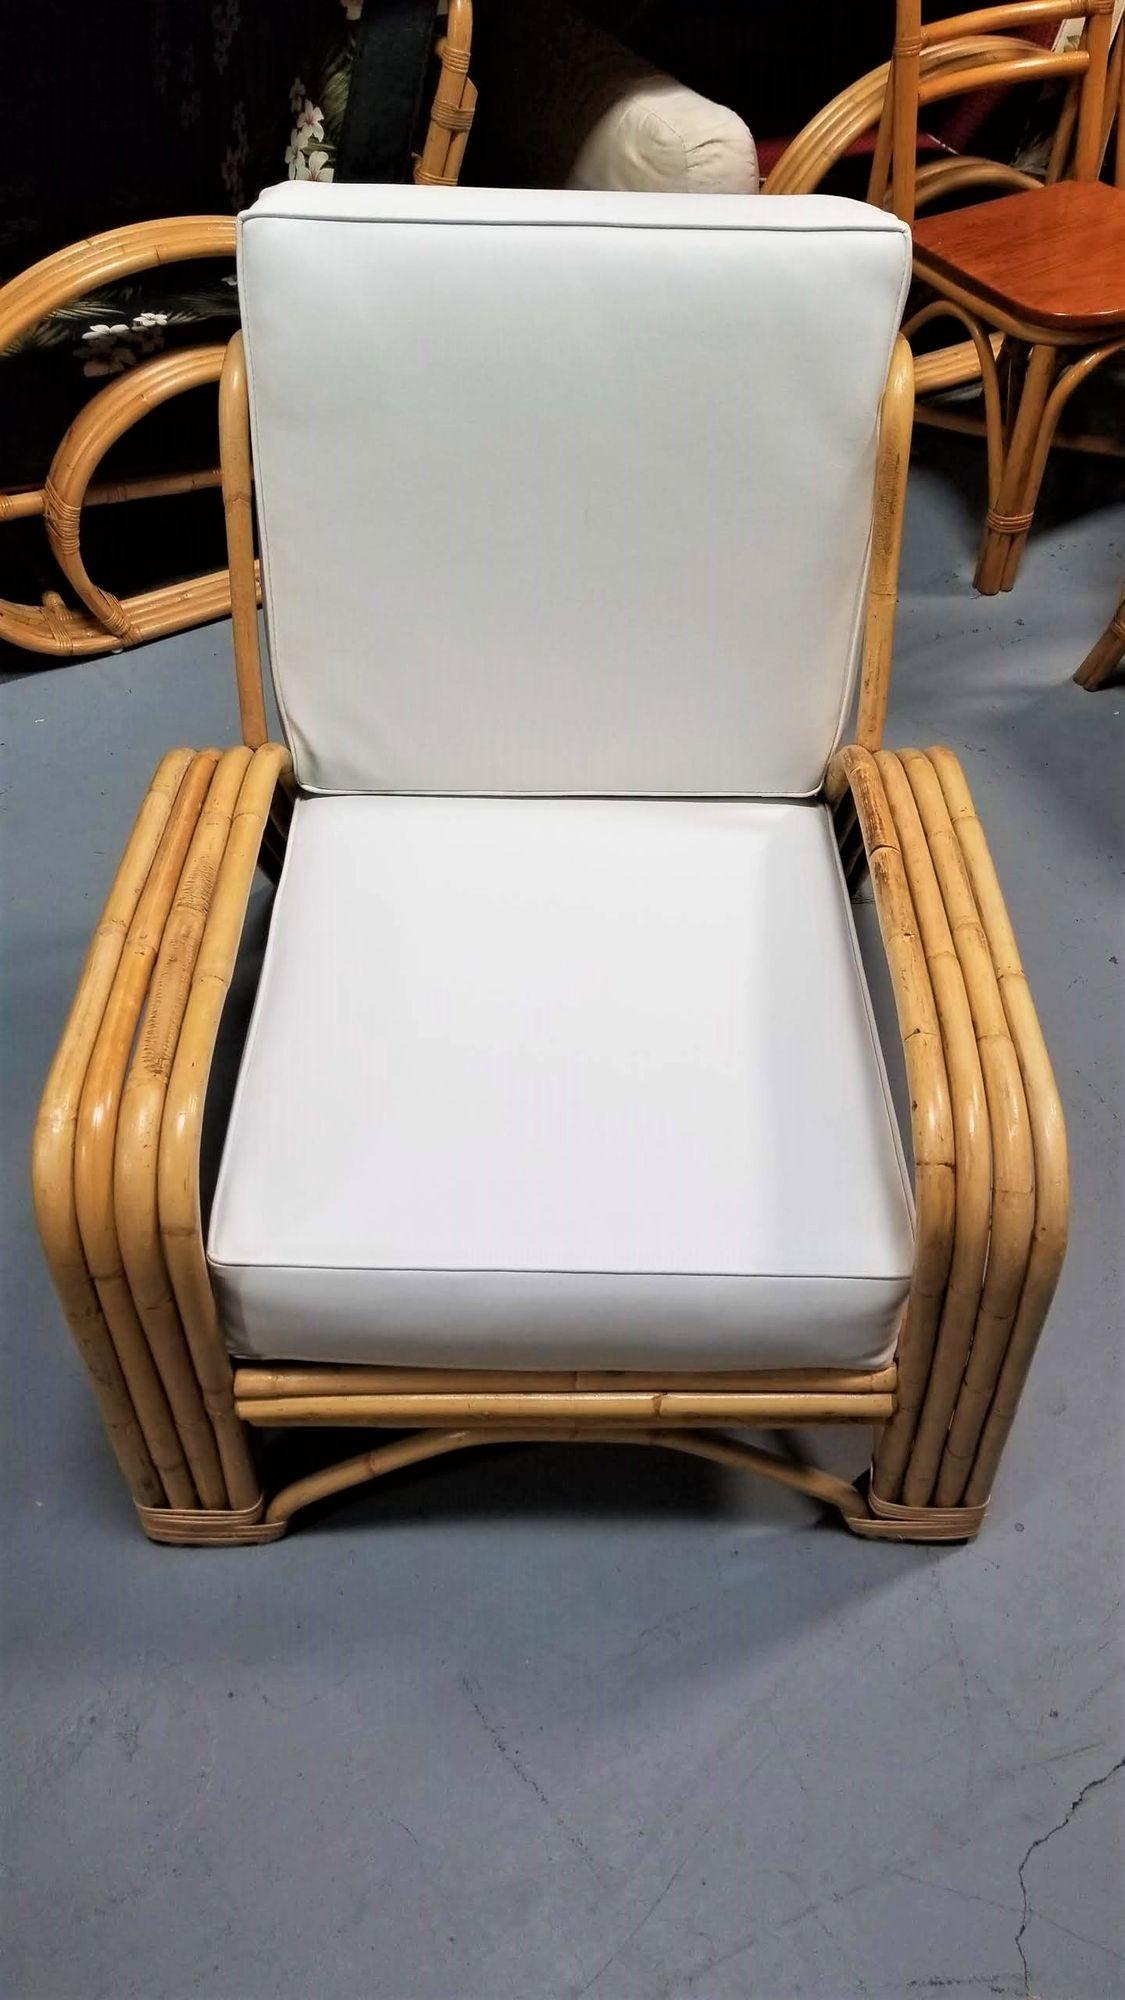 Chaise de salon en rotin à quatre brins restaurée par Paul Laszlo en 1948, avec des accoudoirs en forme d'agrafes à quatre brins et des bases arquées.

1948, États-Unis

Nous n'achetons et ne vendons que les meilleurs meubles en rotin fabriqués par